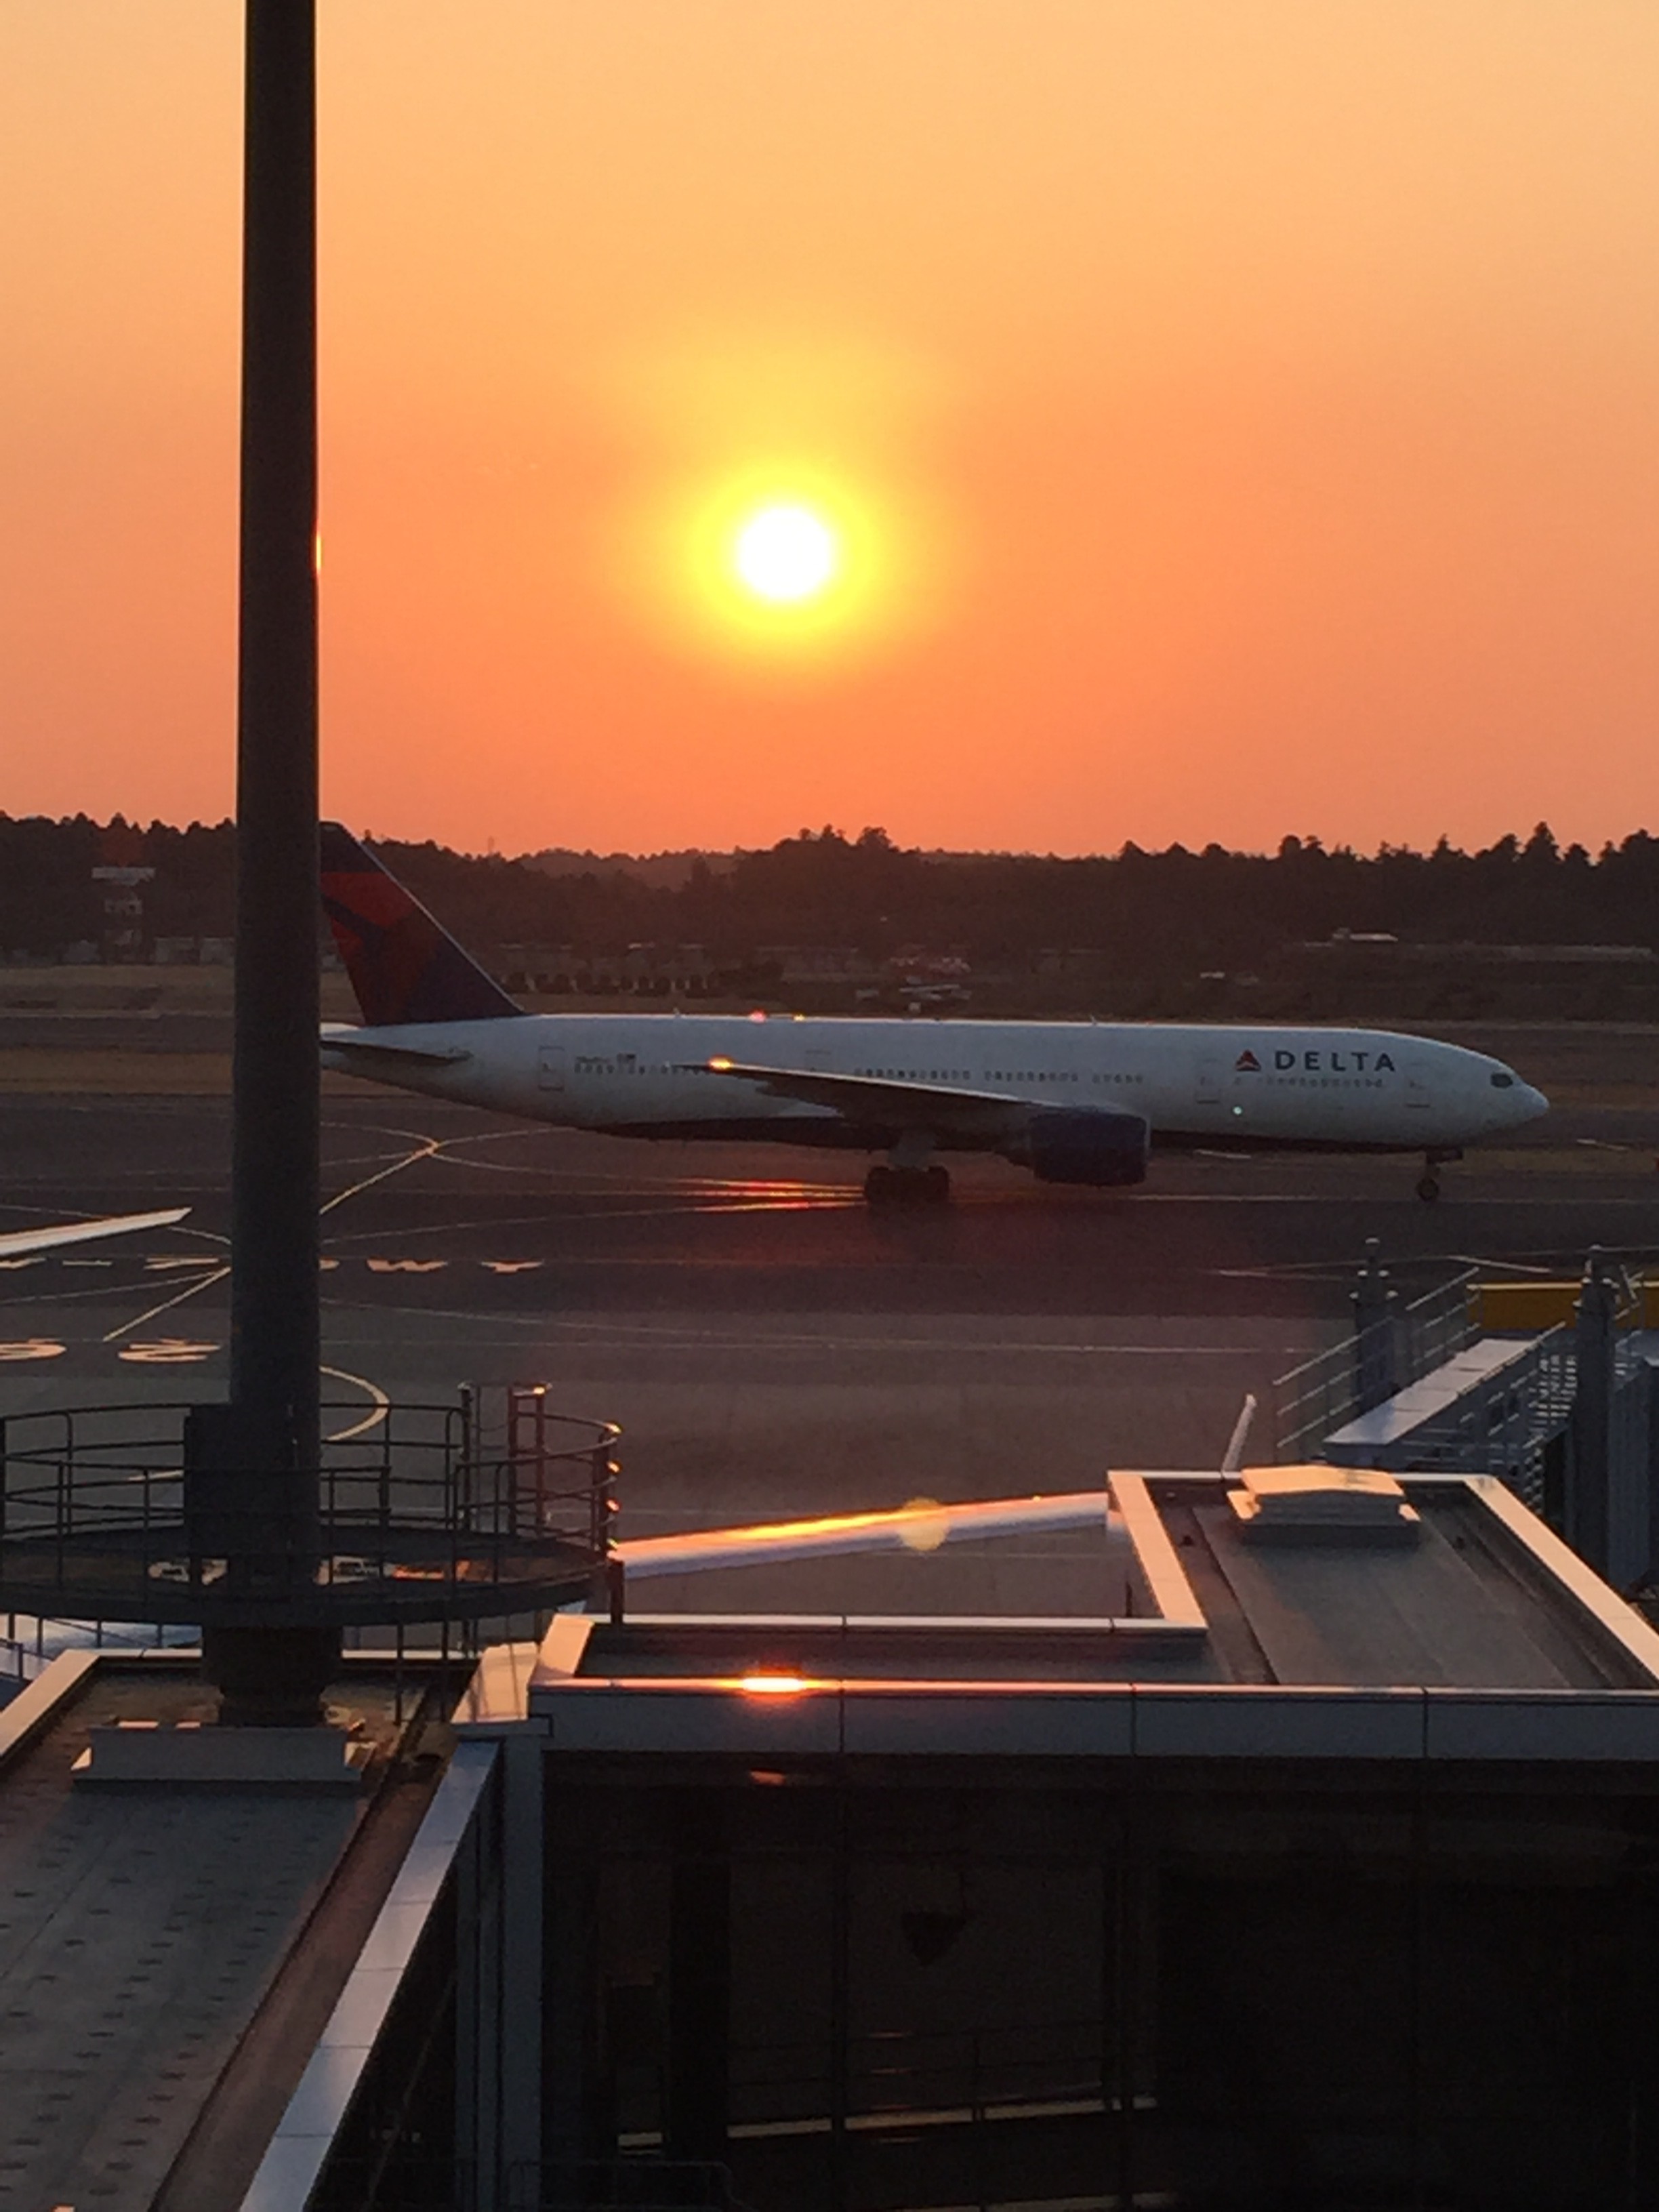 成田空港の滑走路と夕日